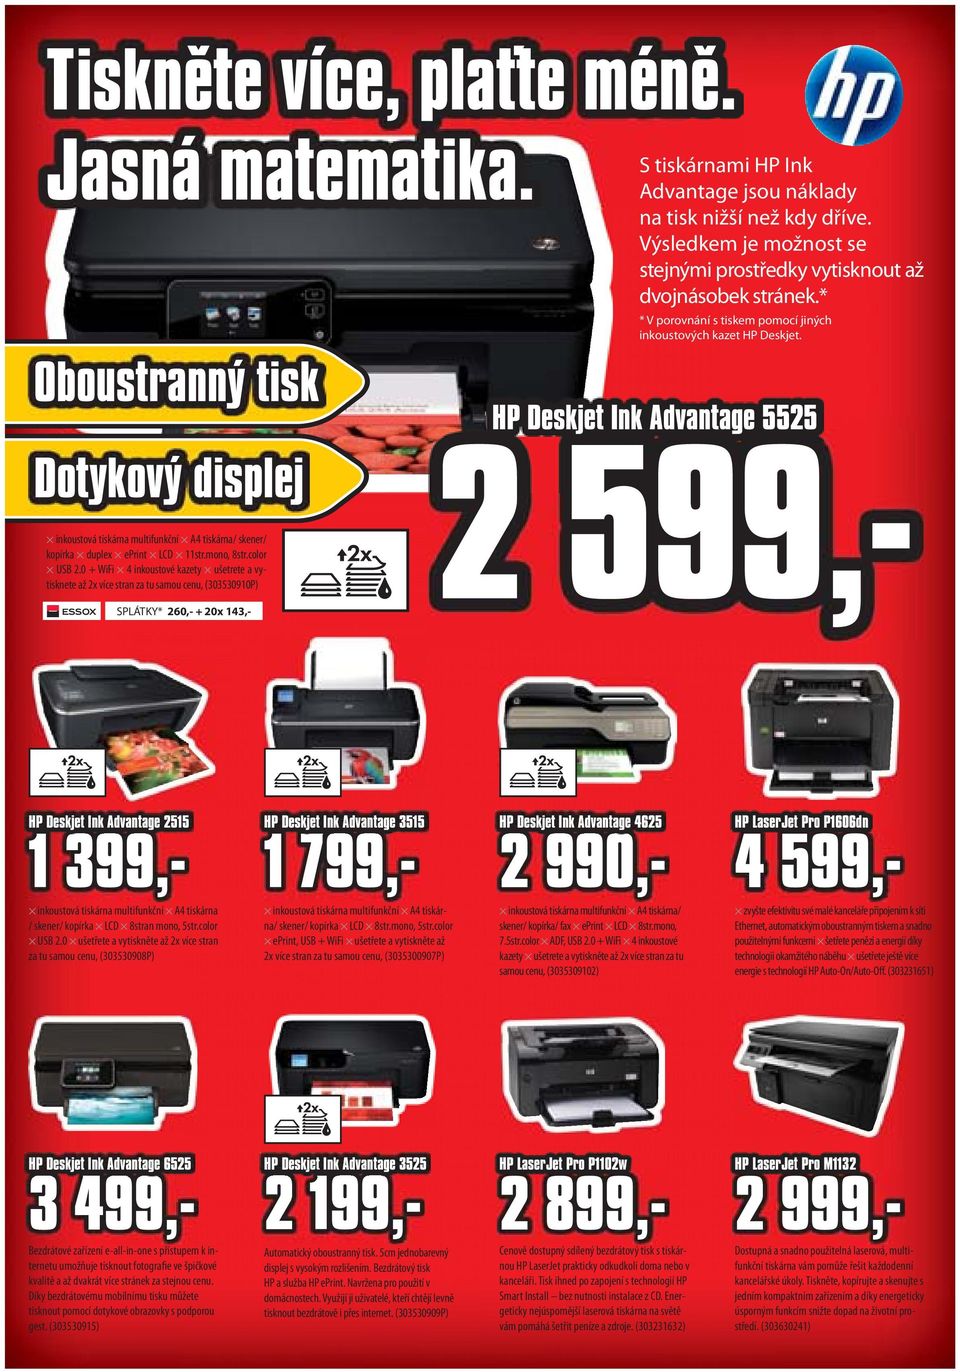 Dotykový displej inkoustová tiskárna multifunkční A4 tiskárna/ skener/ kopírka duplex eprint LCD 11str.mono, 8str.color USB 2.